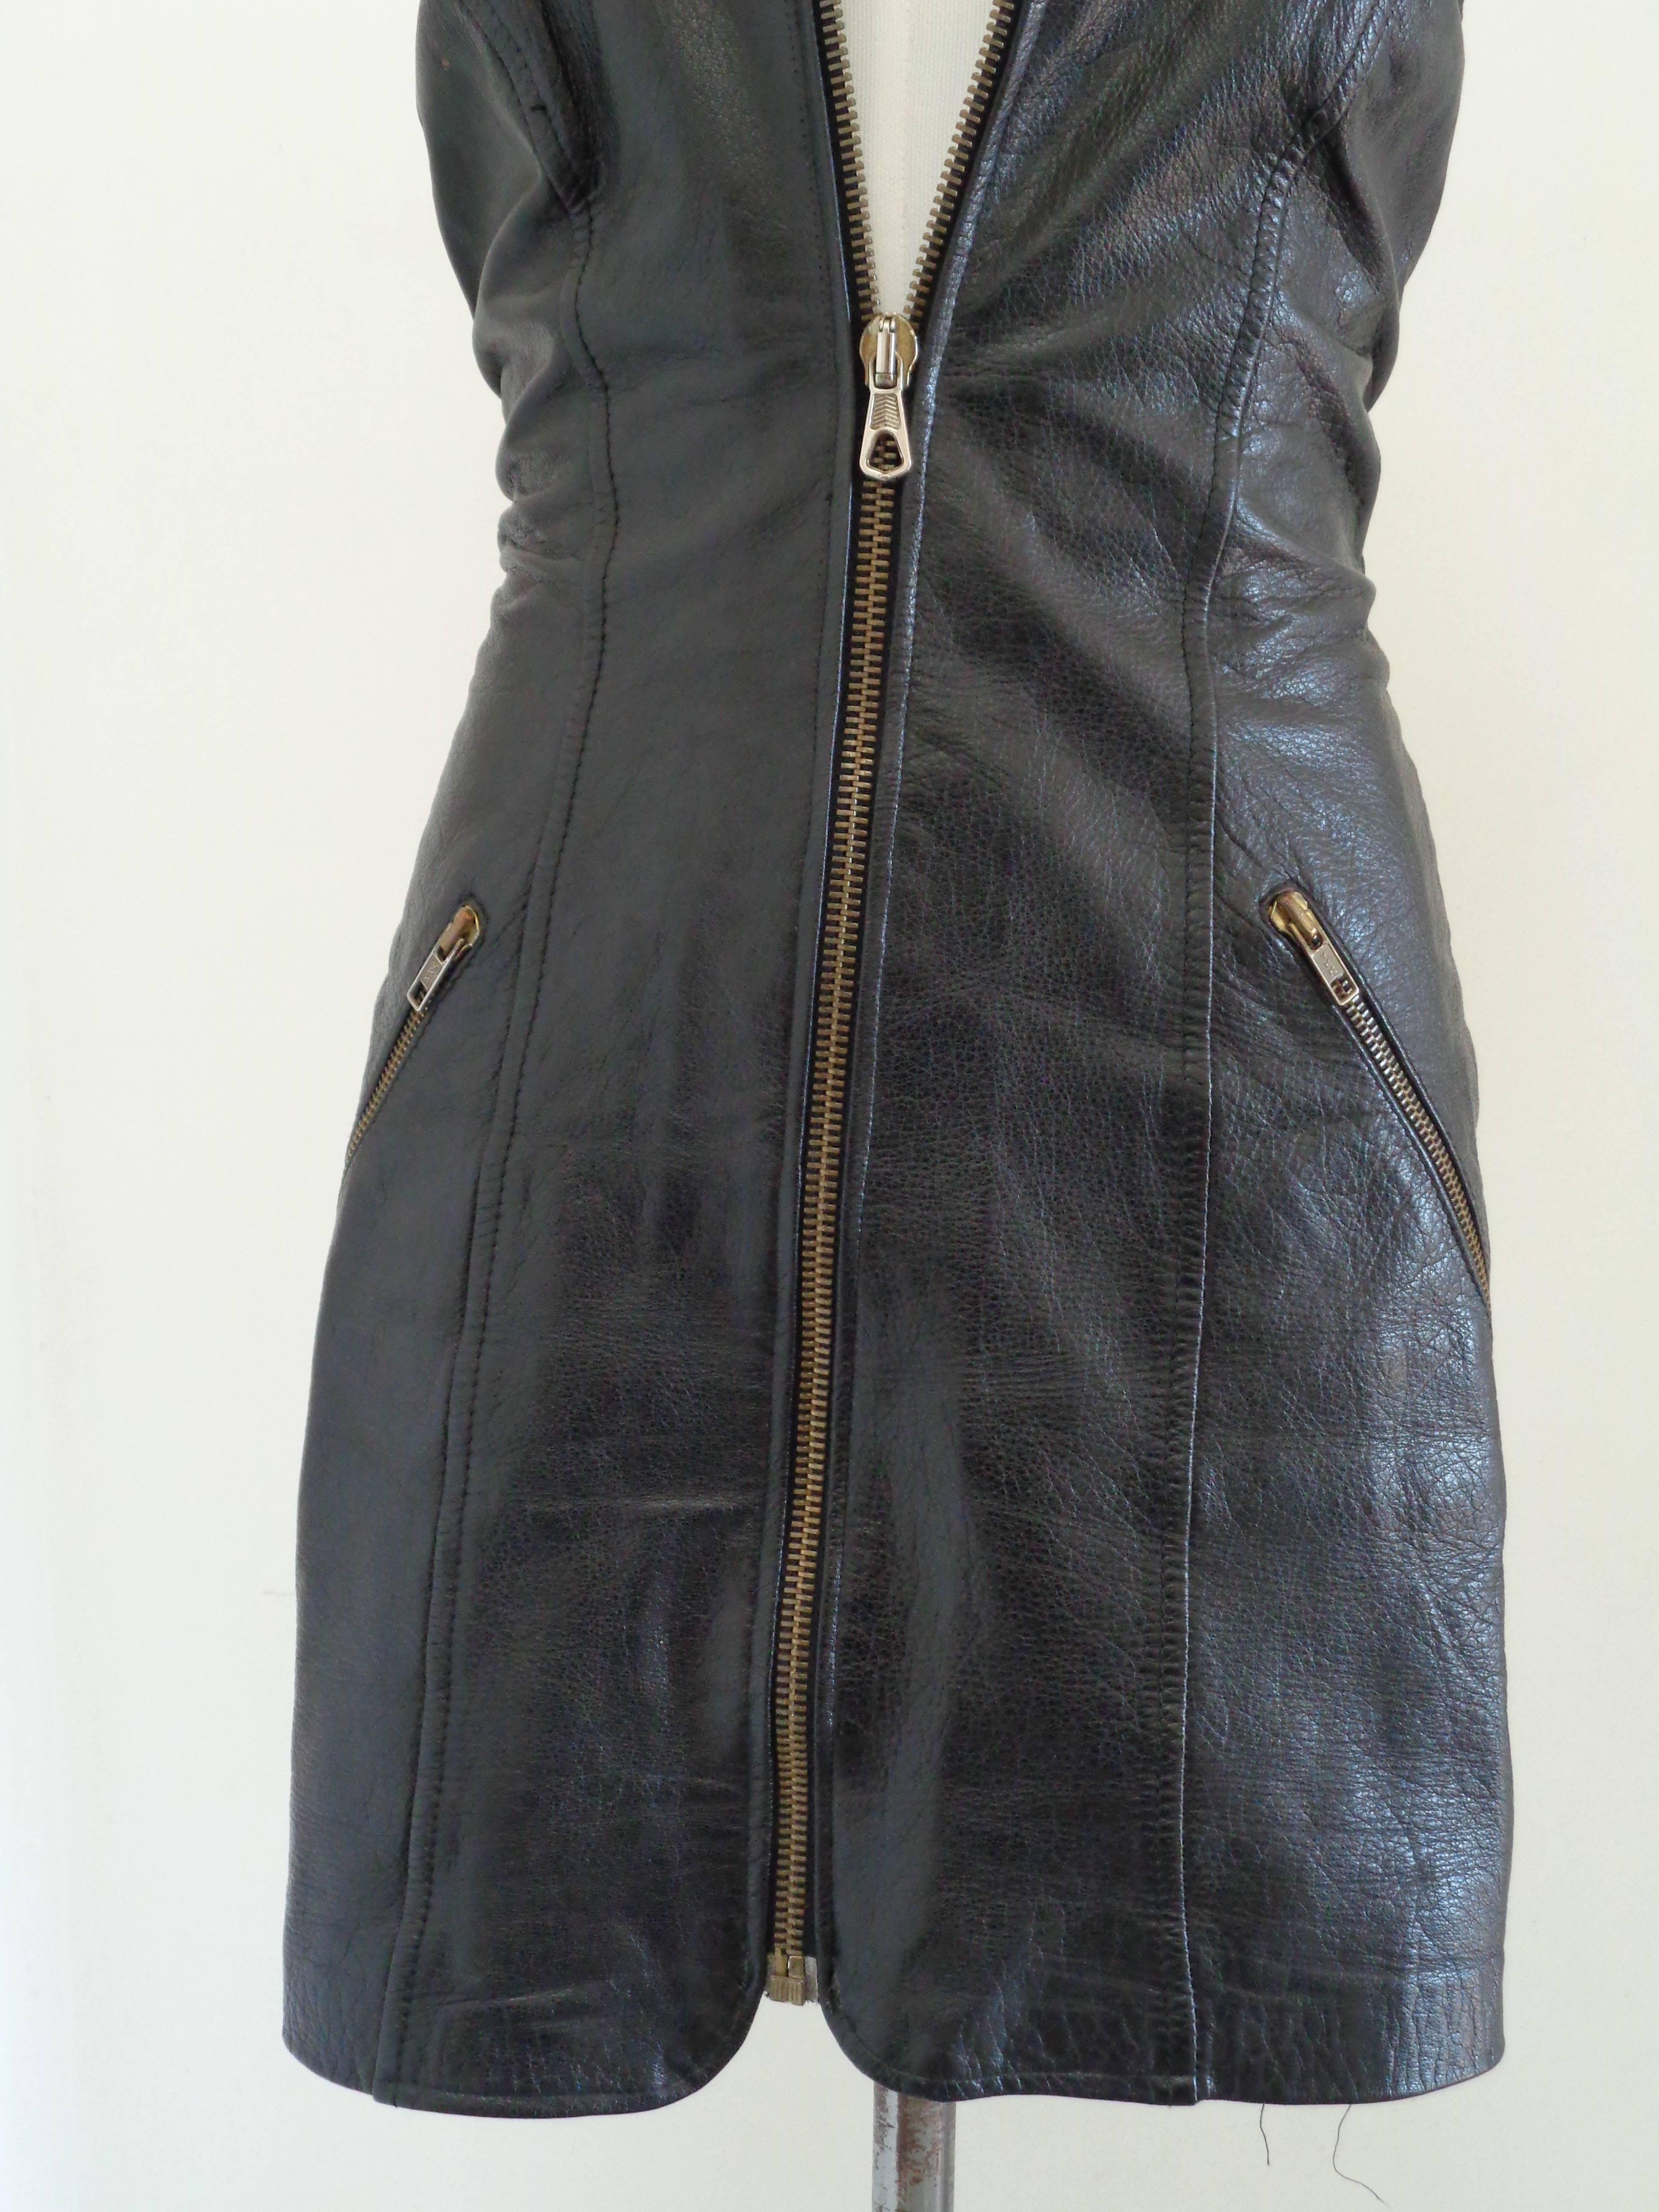 Moschino Cheap & Chic - Robe en cuir noir

Totalement fabriqué en Italie en taille M 